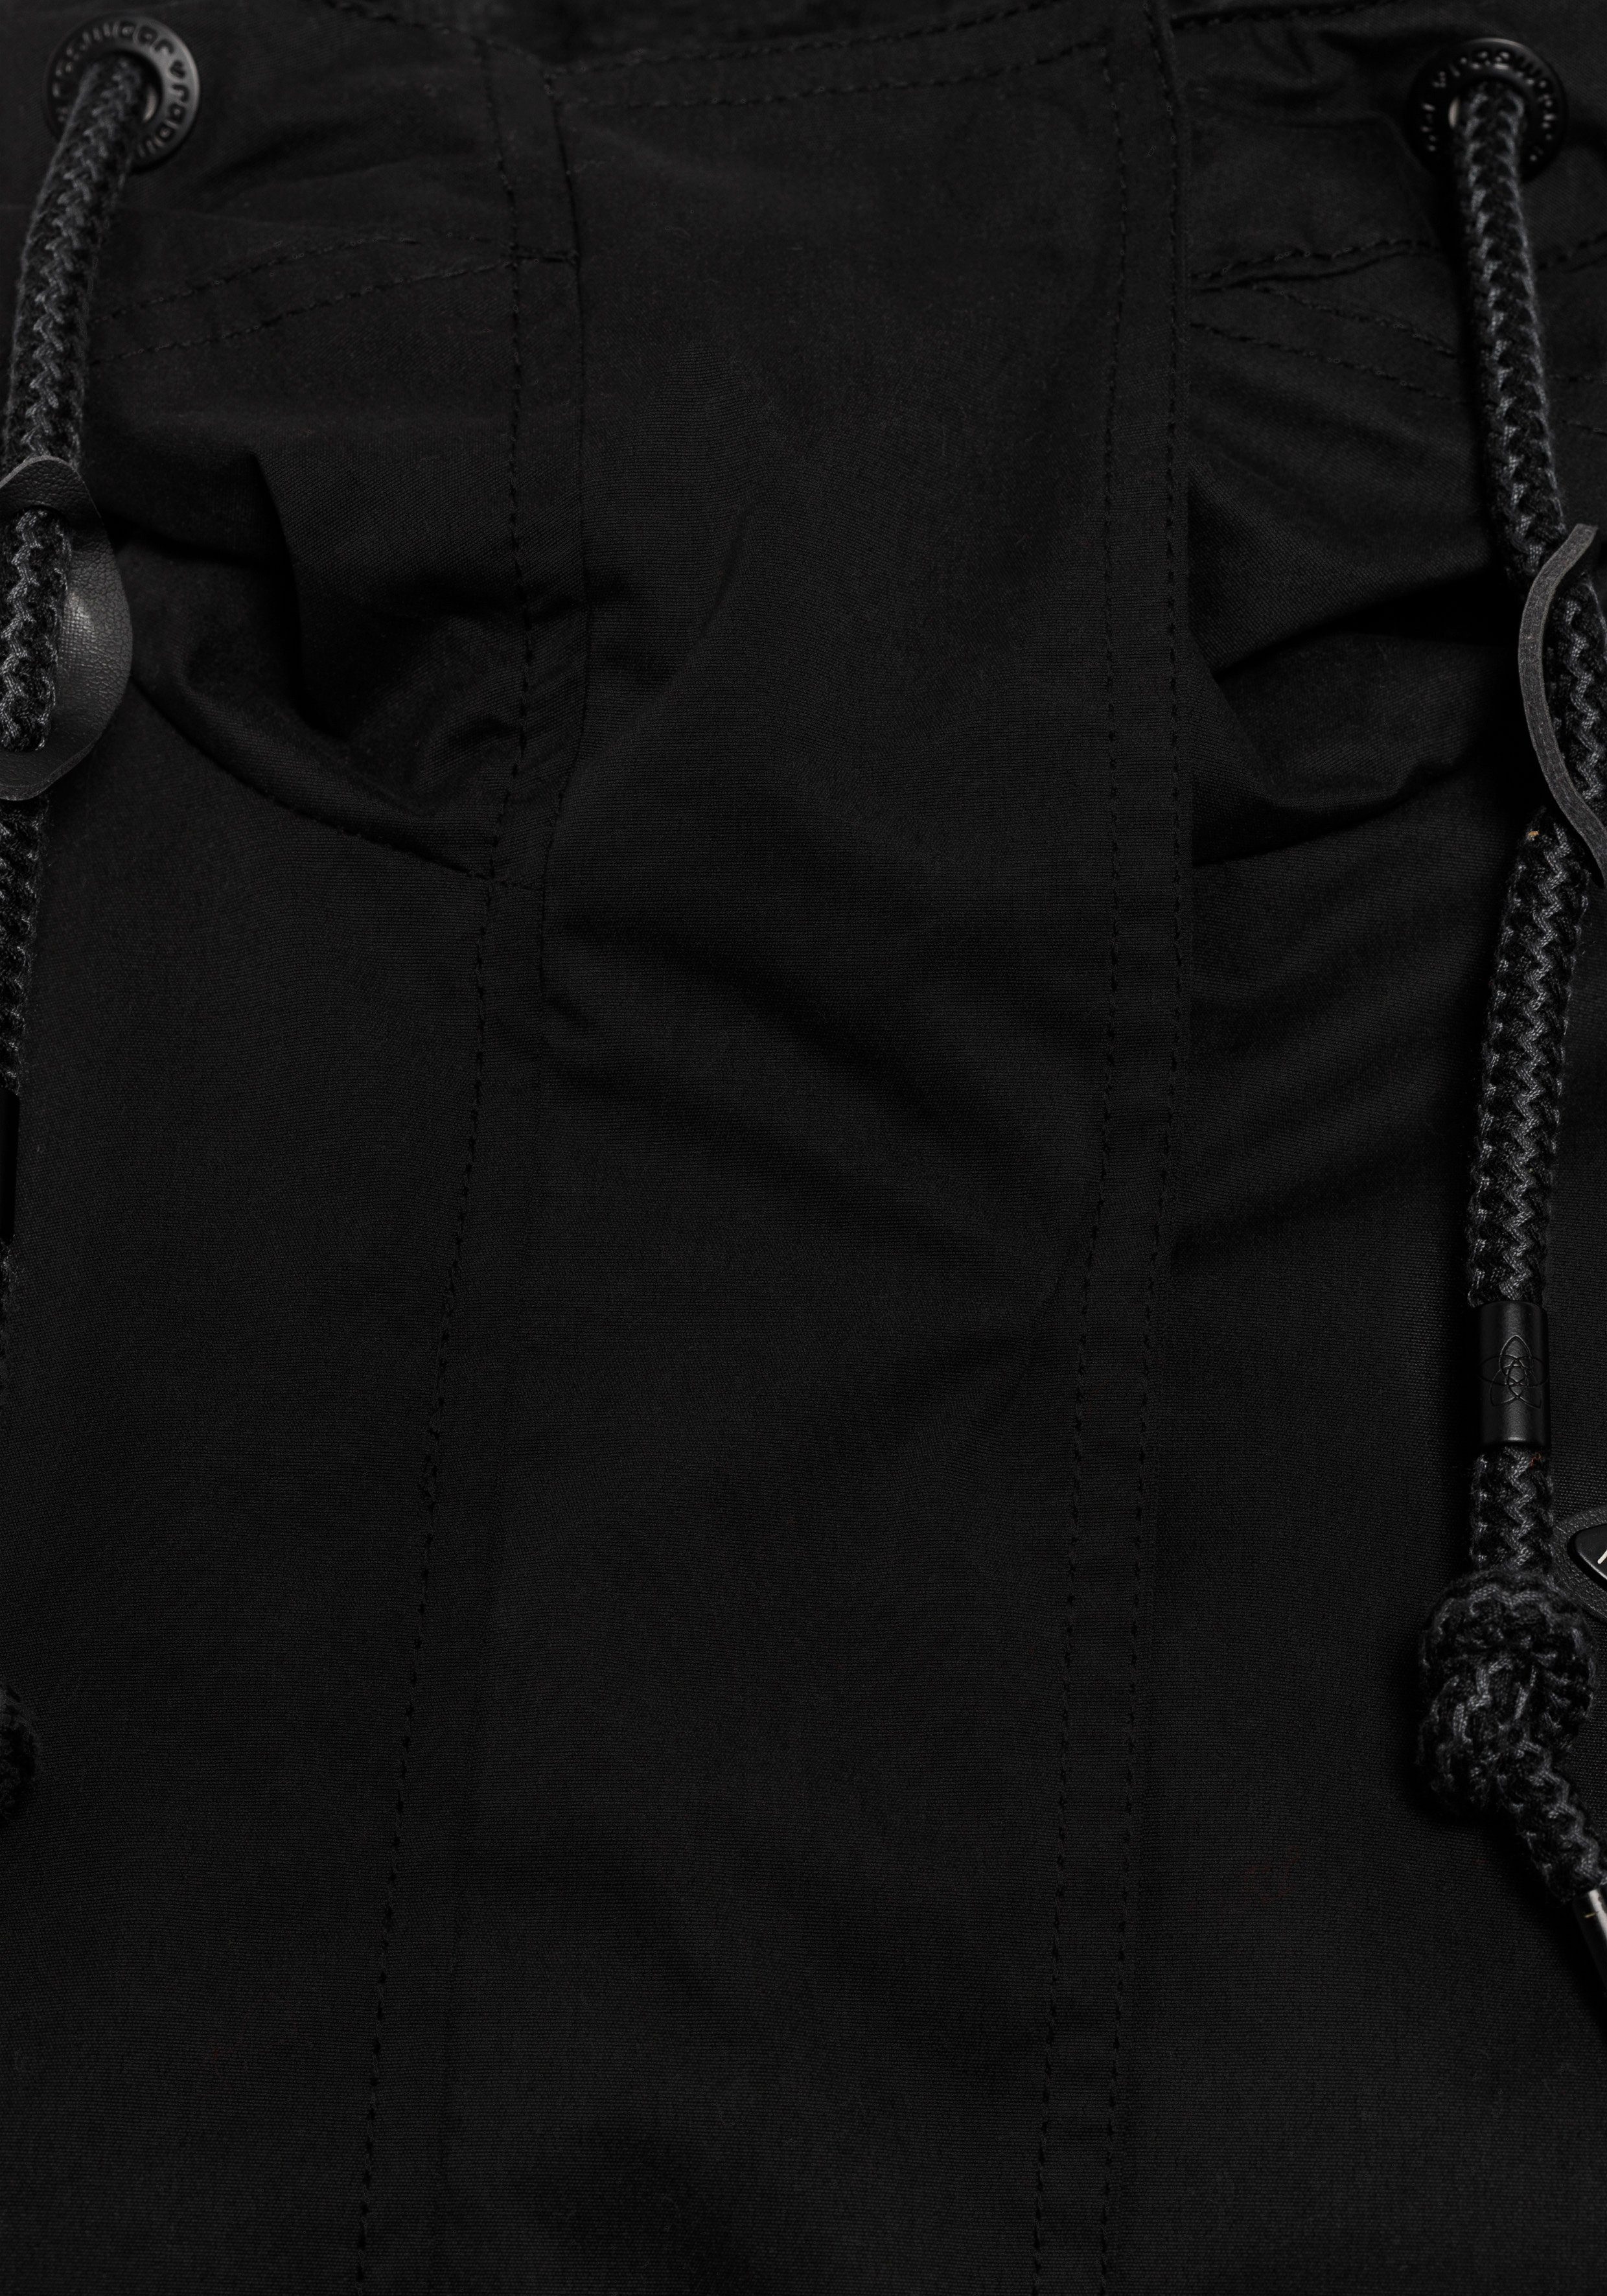 Ragwear Funktionsjacke LENCA stylische Übergangsjacke 1010 Waterproof black fabric